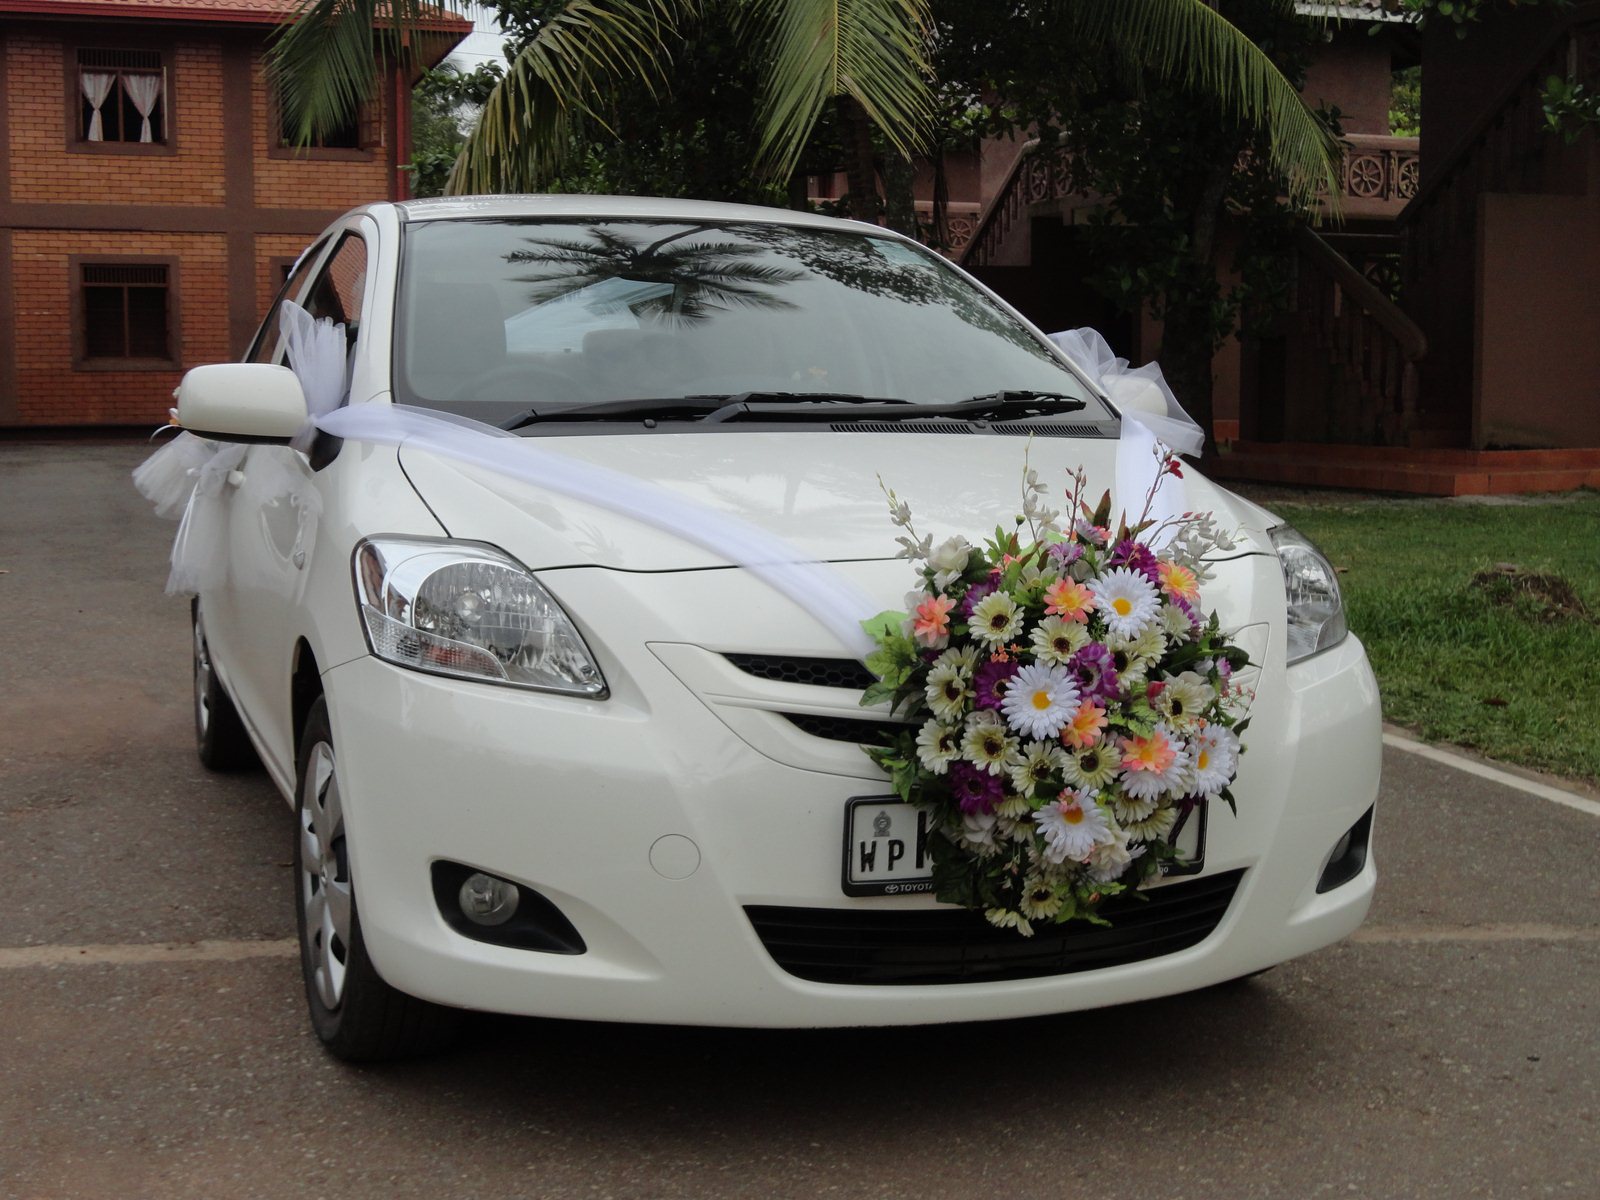 best-wedding-car-decorations-with-wedding-white-car-decorations-wedding-car-decorations-by